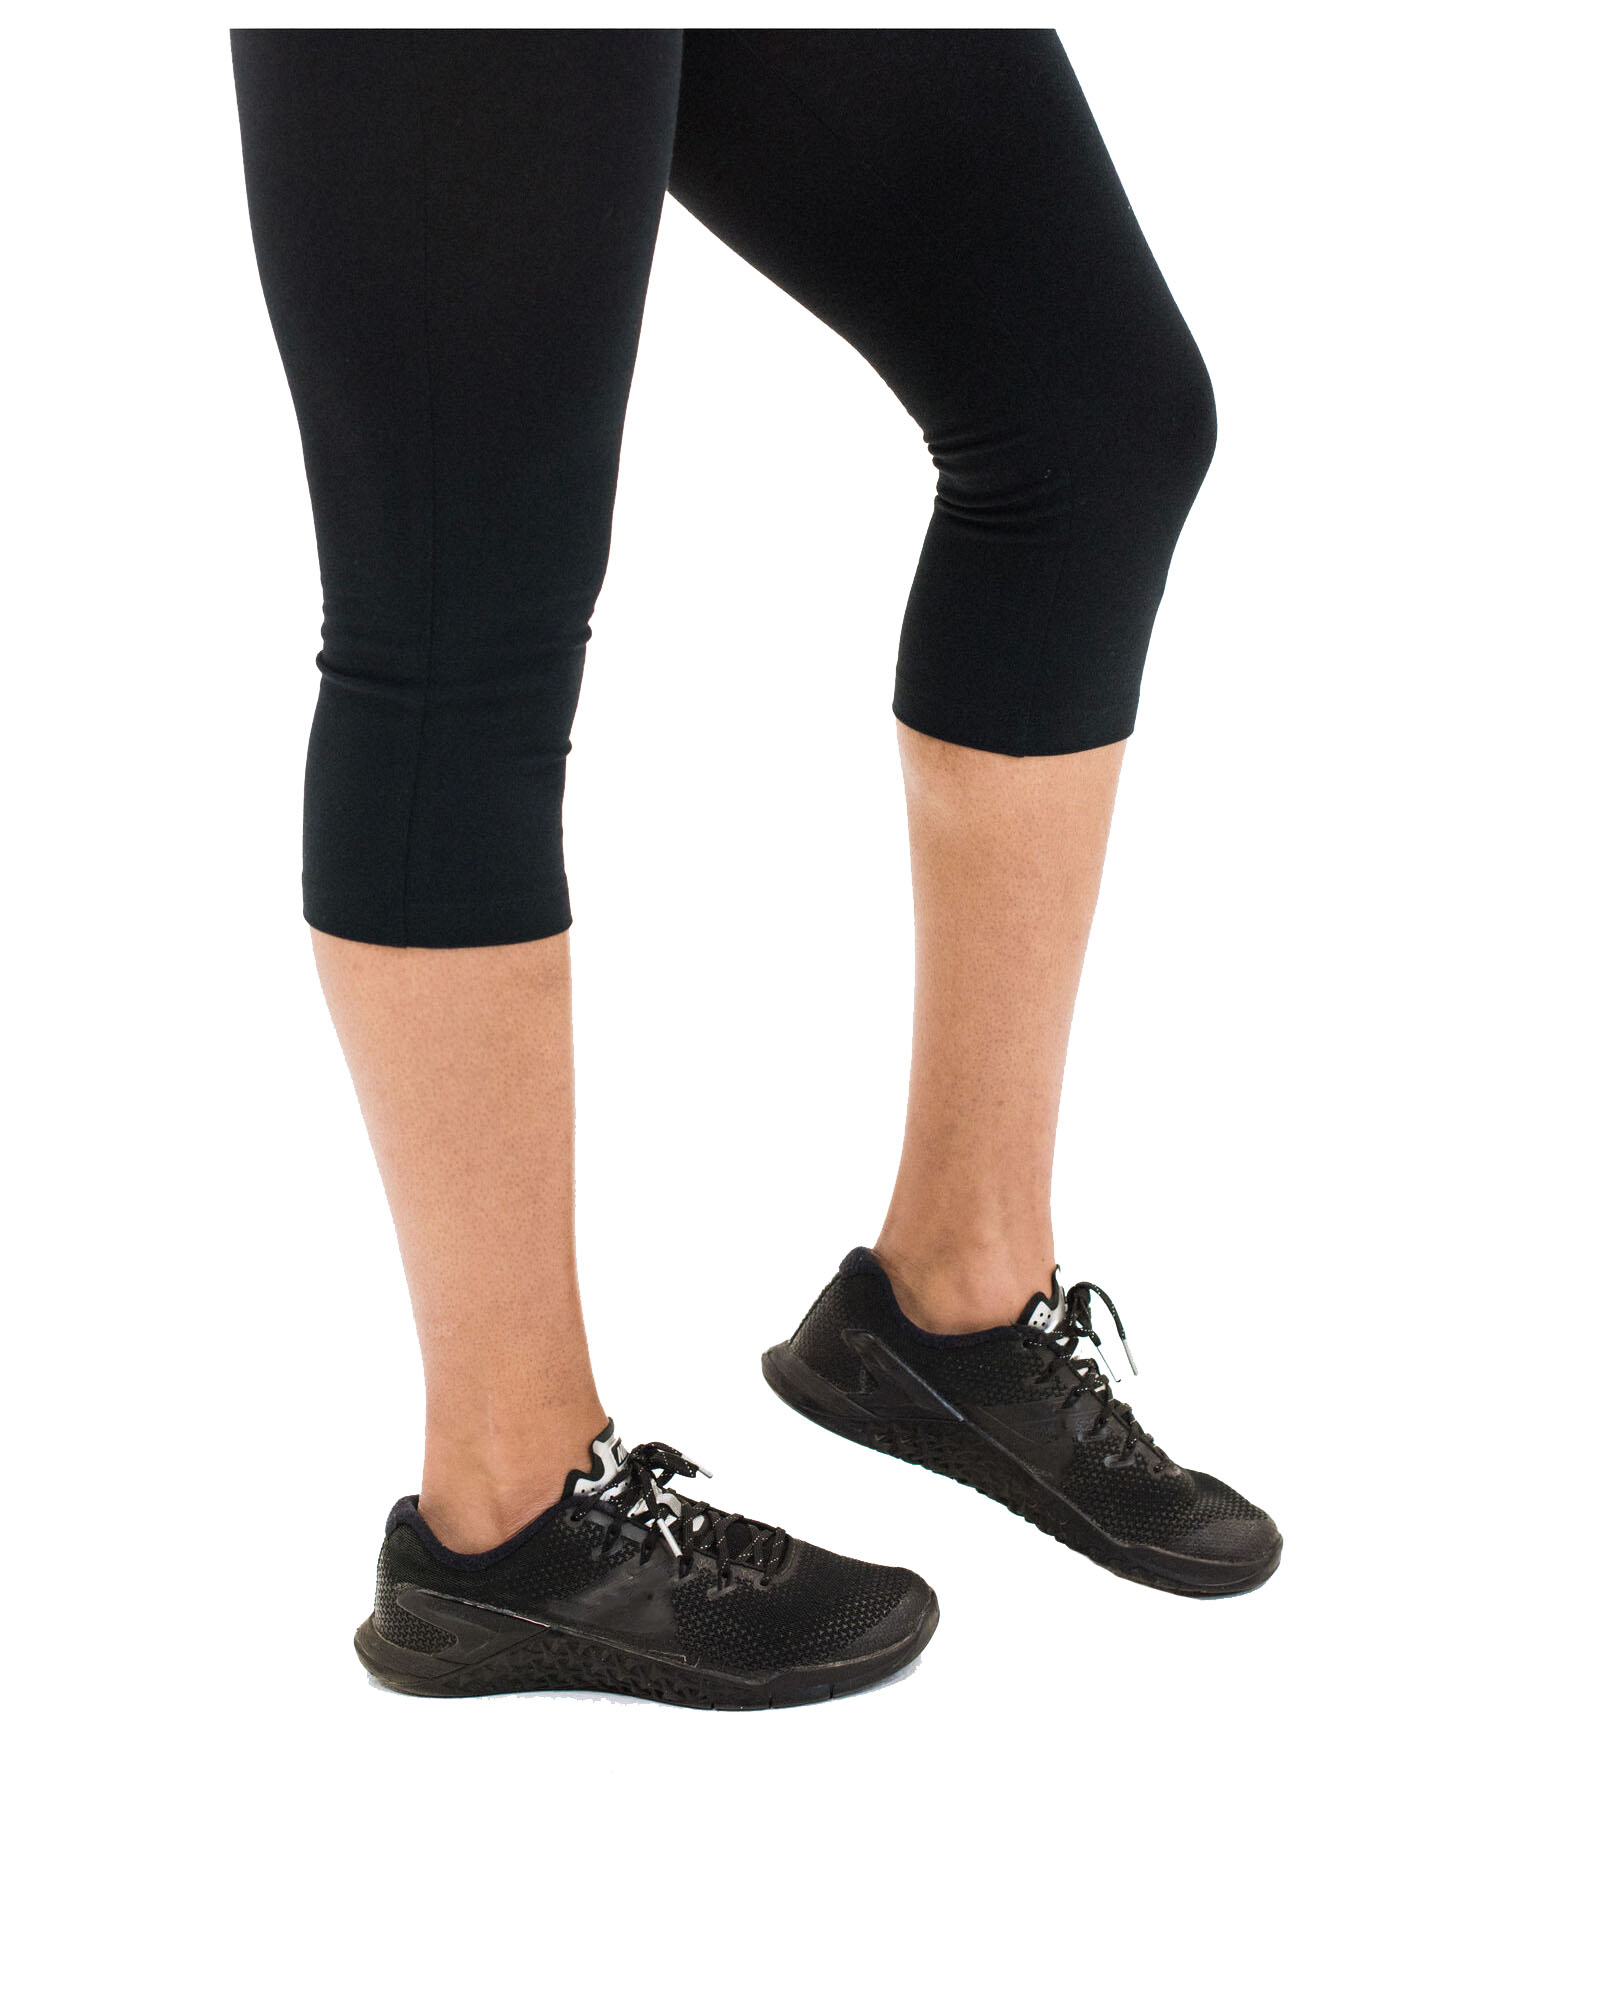 Spalding Women's Essential Capri Legging, Mid-Waist Black, Medium